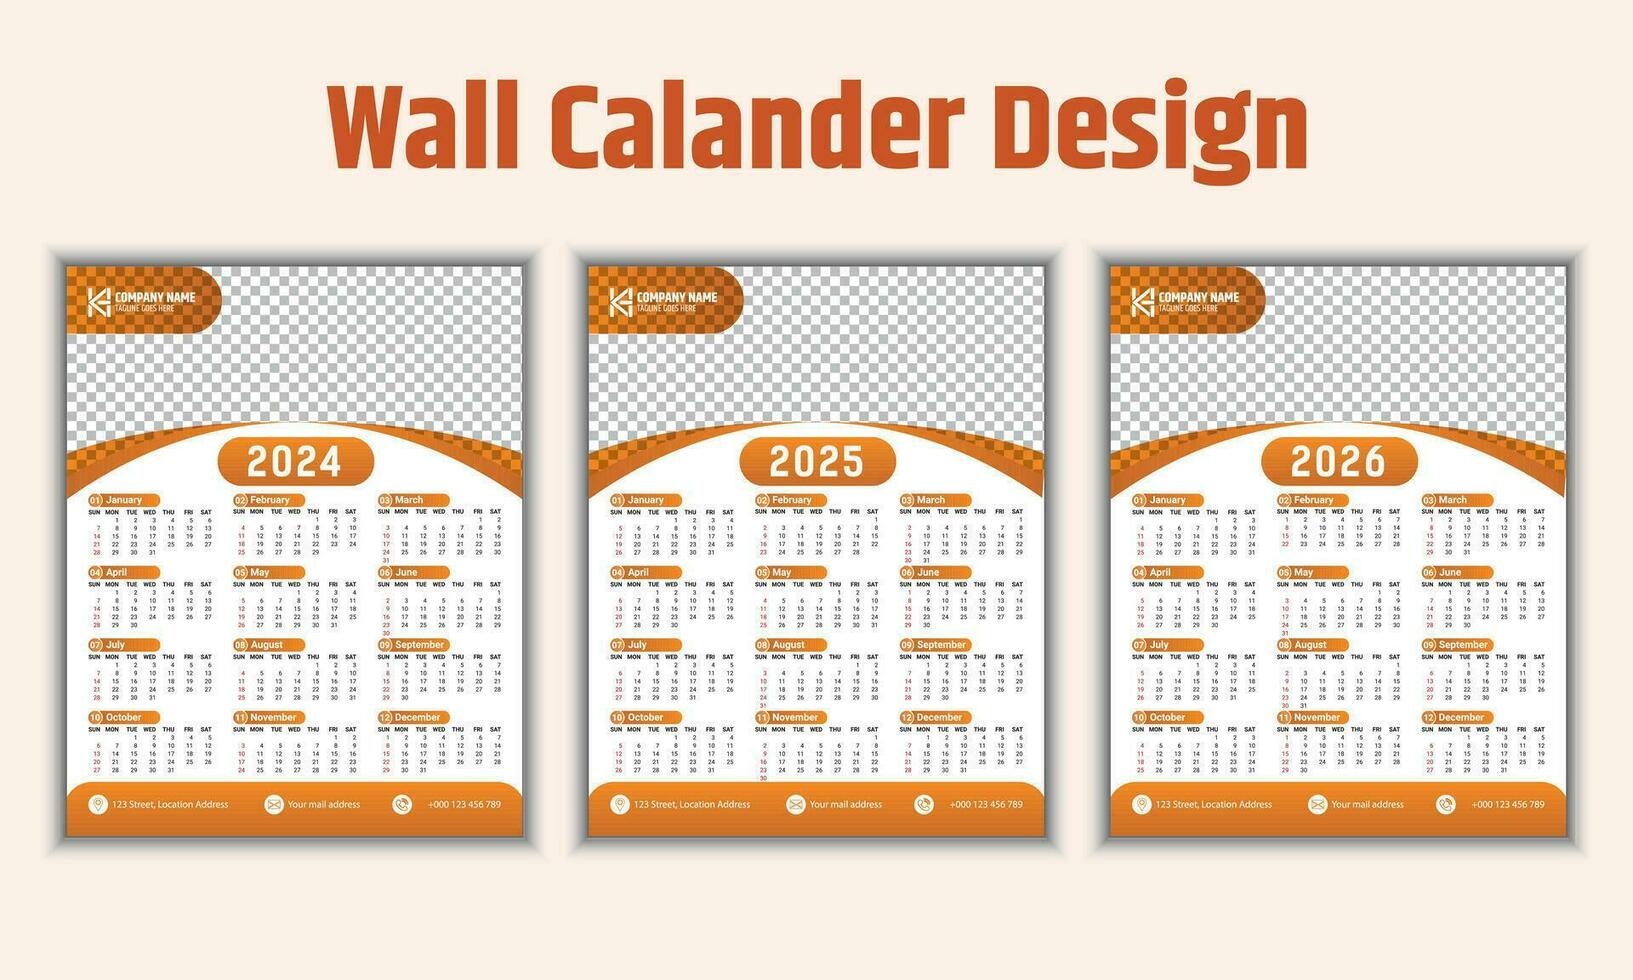 kreativ vägg kalender design för 2024. vecka börjar på söndag och 12 månader av design är ingår. en professionell och lämplig mall för de företag. vektor illustration